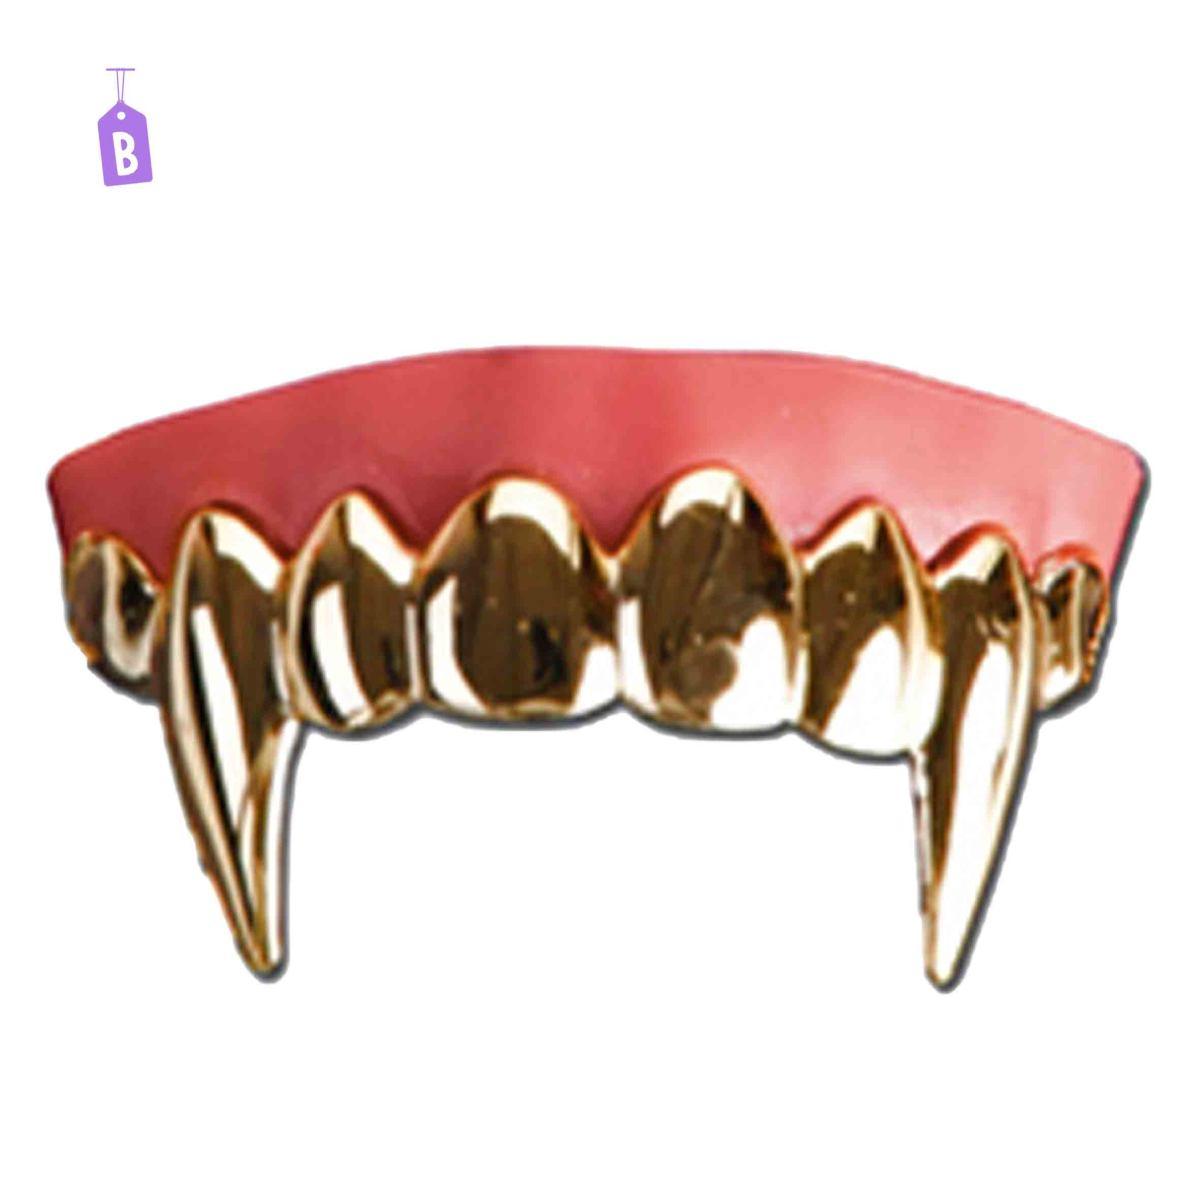 Denti Lusso Termoplastici 5 Modelli